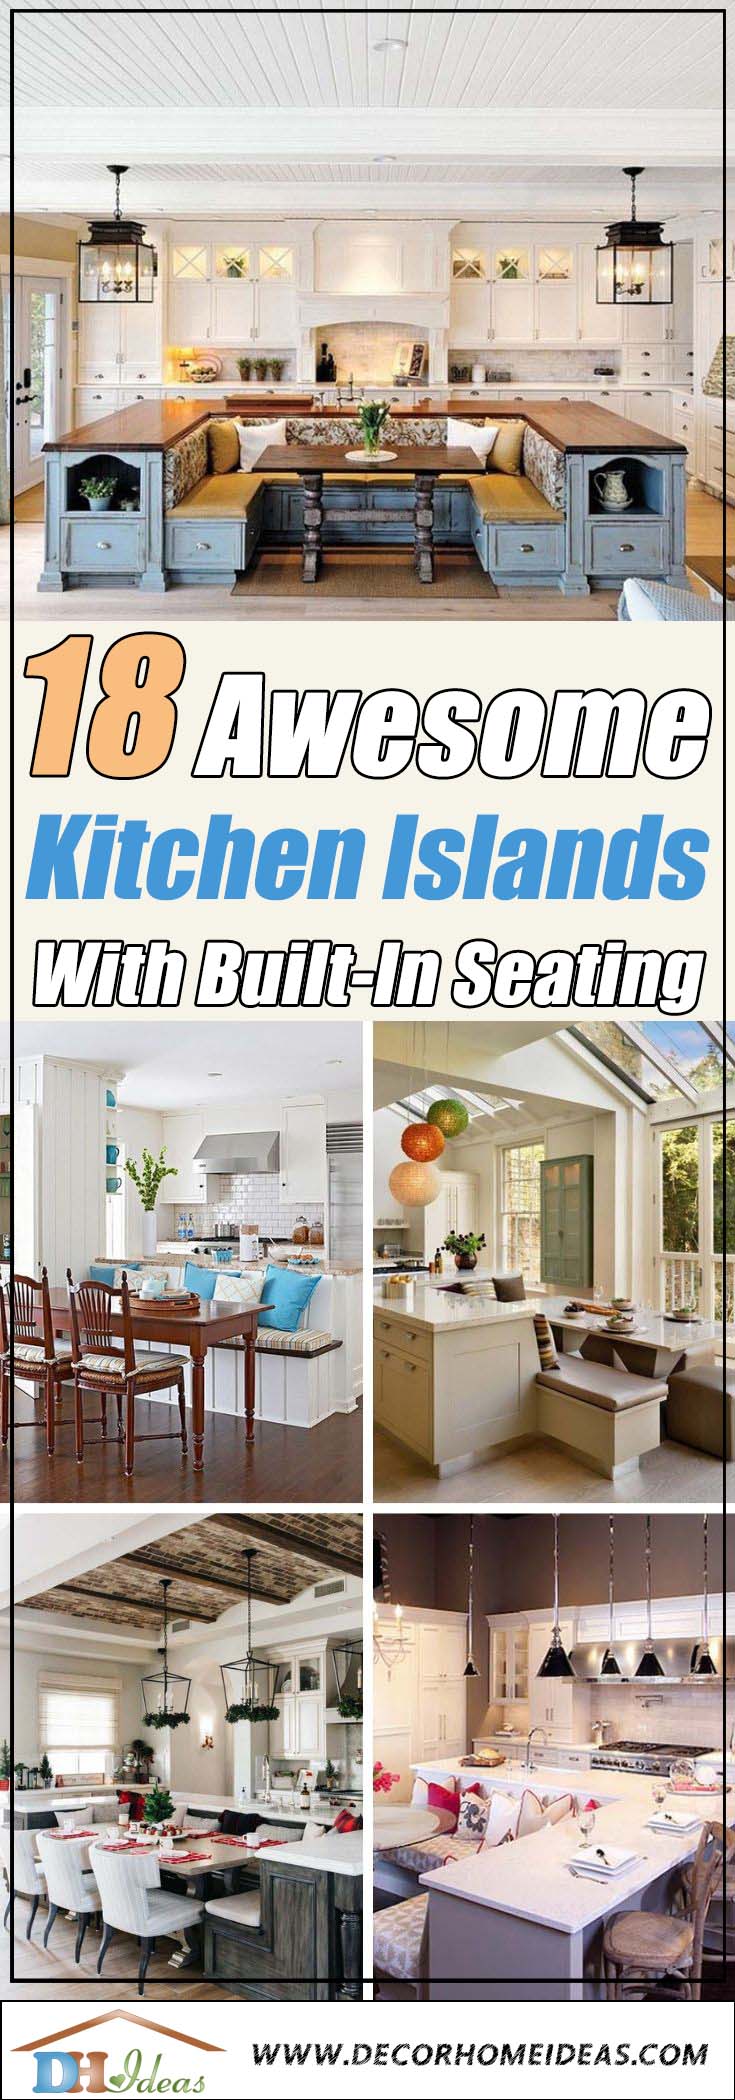 Big Kitchen Island With Built in Seating Design #kitchen #island #decorhomeideas